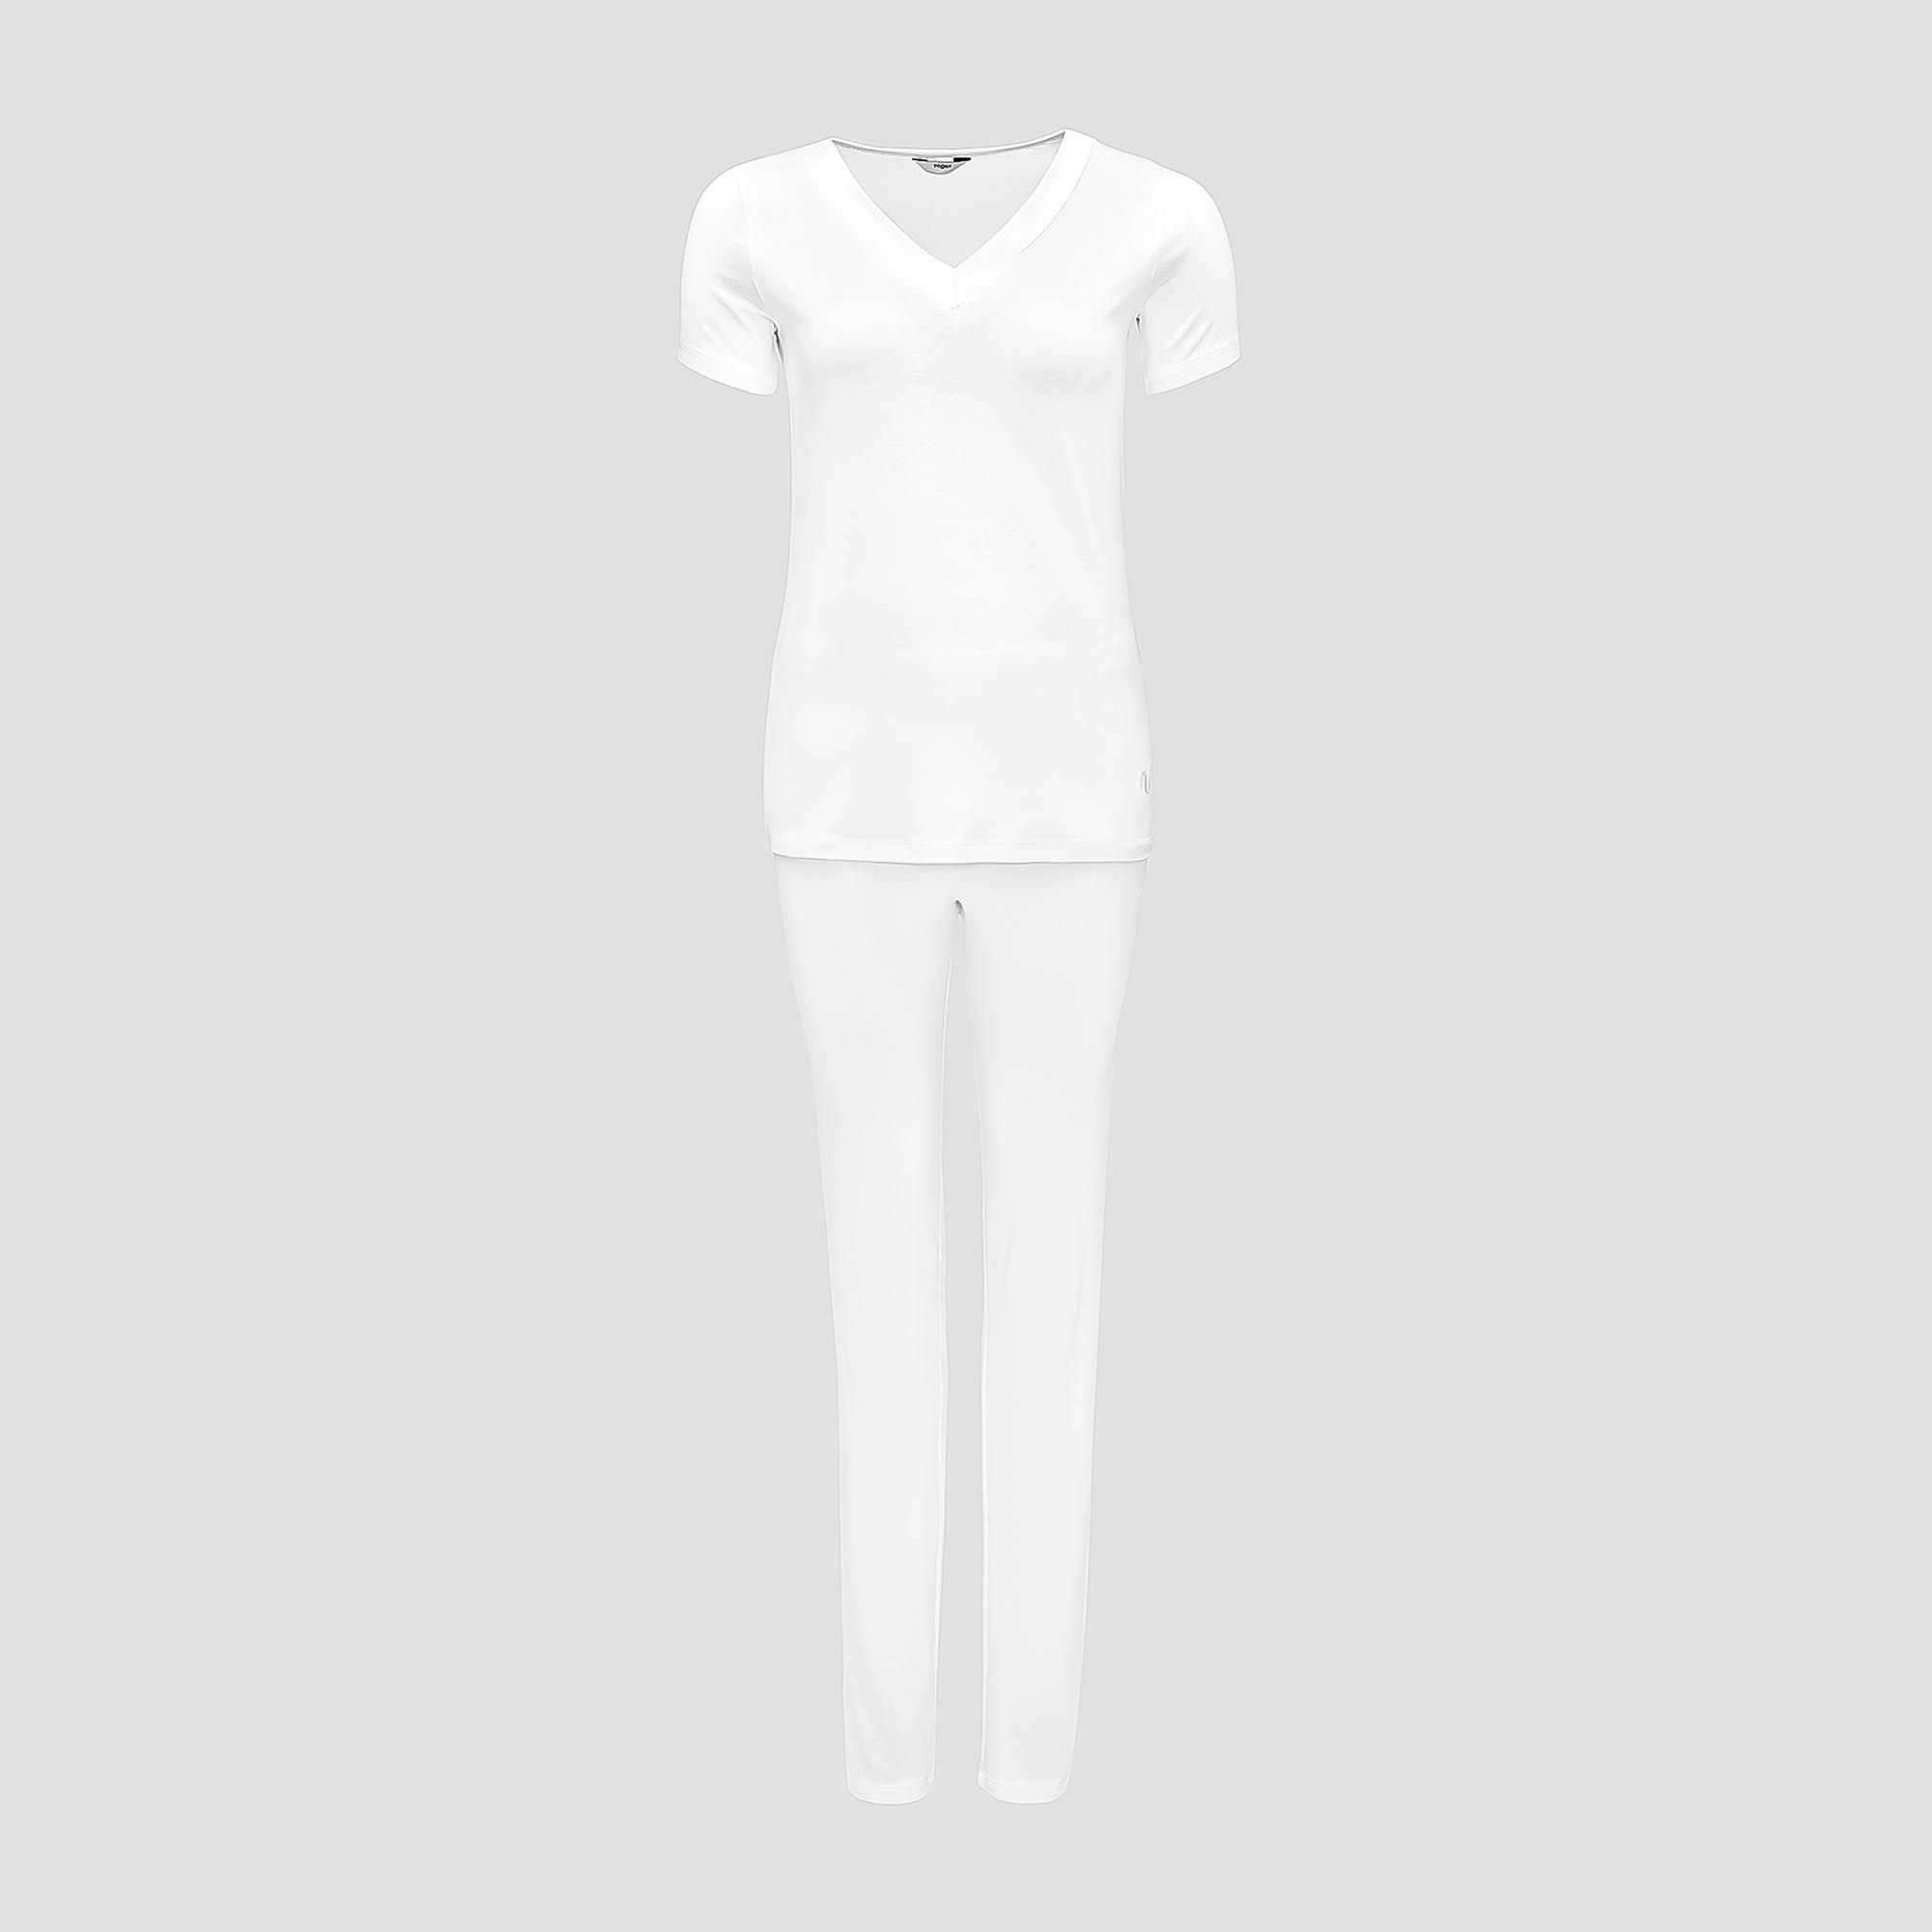 Пижама Togas Ингелла белая женская S(44) 2 предмета